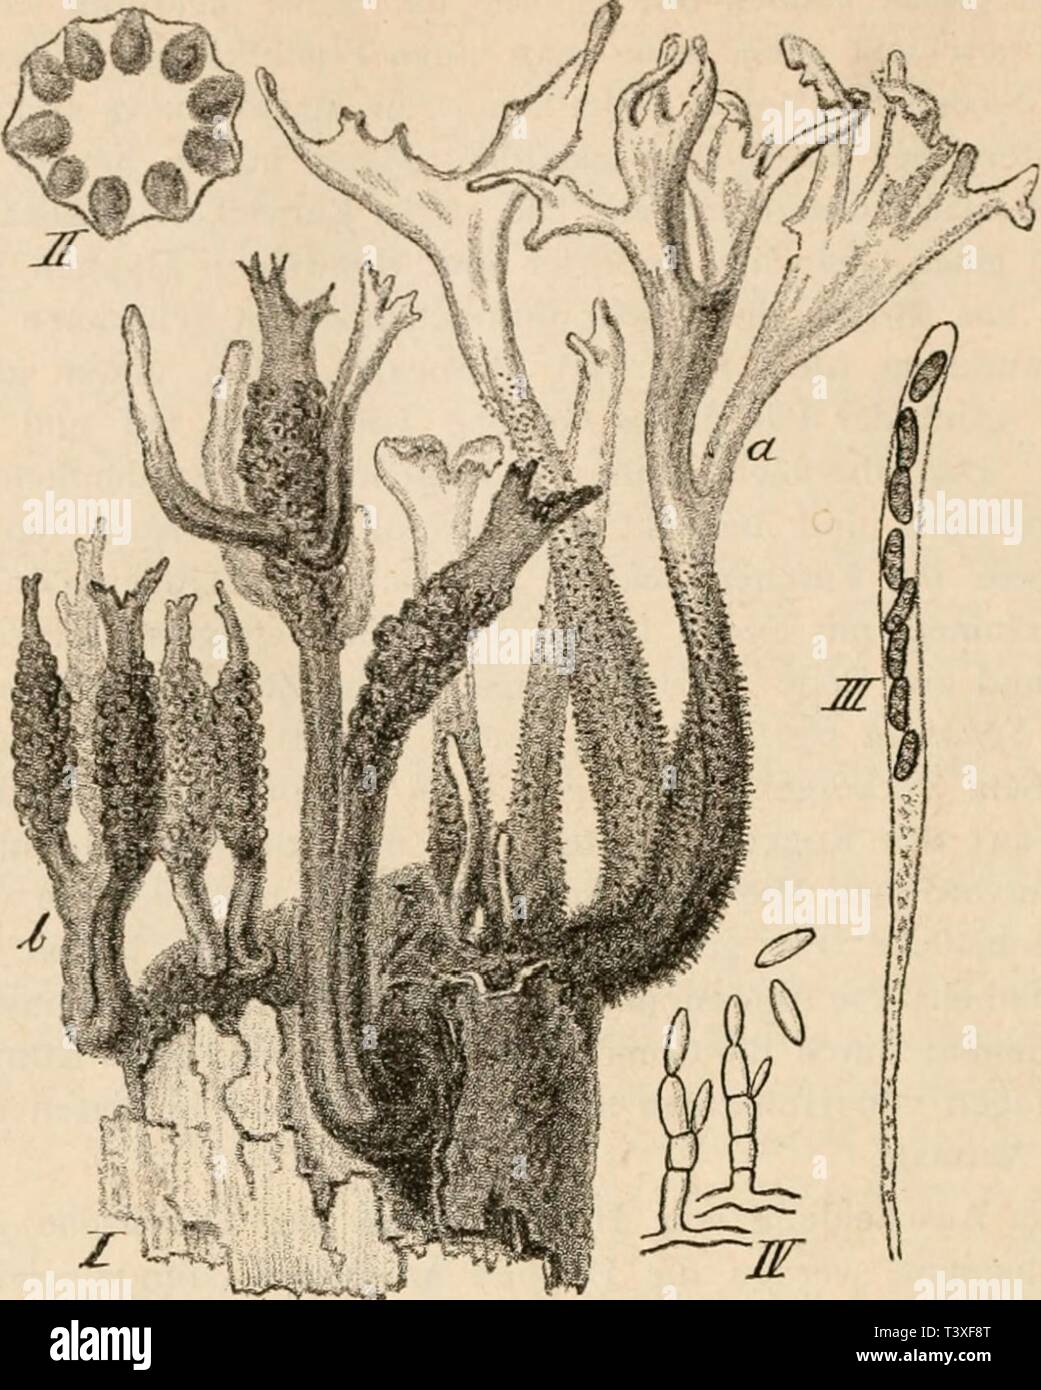 Archive image from page 481 of Die pilze in morphologischer, physiologischer,. Die pilze in morphologischer, physiologischer, biologischer und systematischer beziehung  diepilzeinmorpho00zopf Year: 1890  462    (B, 7G0.) l''g- '52. Xylaria Hypoxylon L. I Fragment] eines Baumstumpfes mit den hirschgeweih-artig verzweigten F'ruchtlagern &lt;/, welche in dem oberen helleren Theile die Conidien tragen; bei /' sieht man die die Schlauchfruchte tragenden, keuligen Stromata. Die Schlauchfrüchte sitzen in dem warzigen Theile der Lager. II Querschnitt durch eine Stroma mit Perithecien, ca. 4 fach. III  Stock Photo